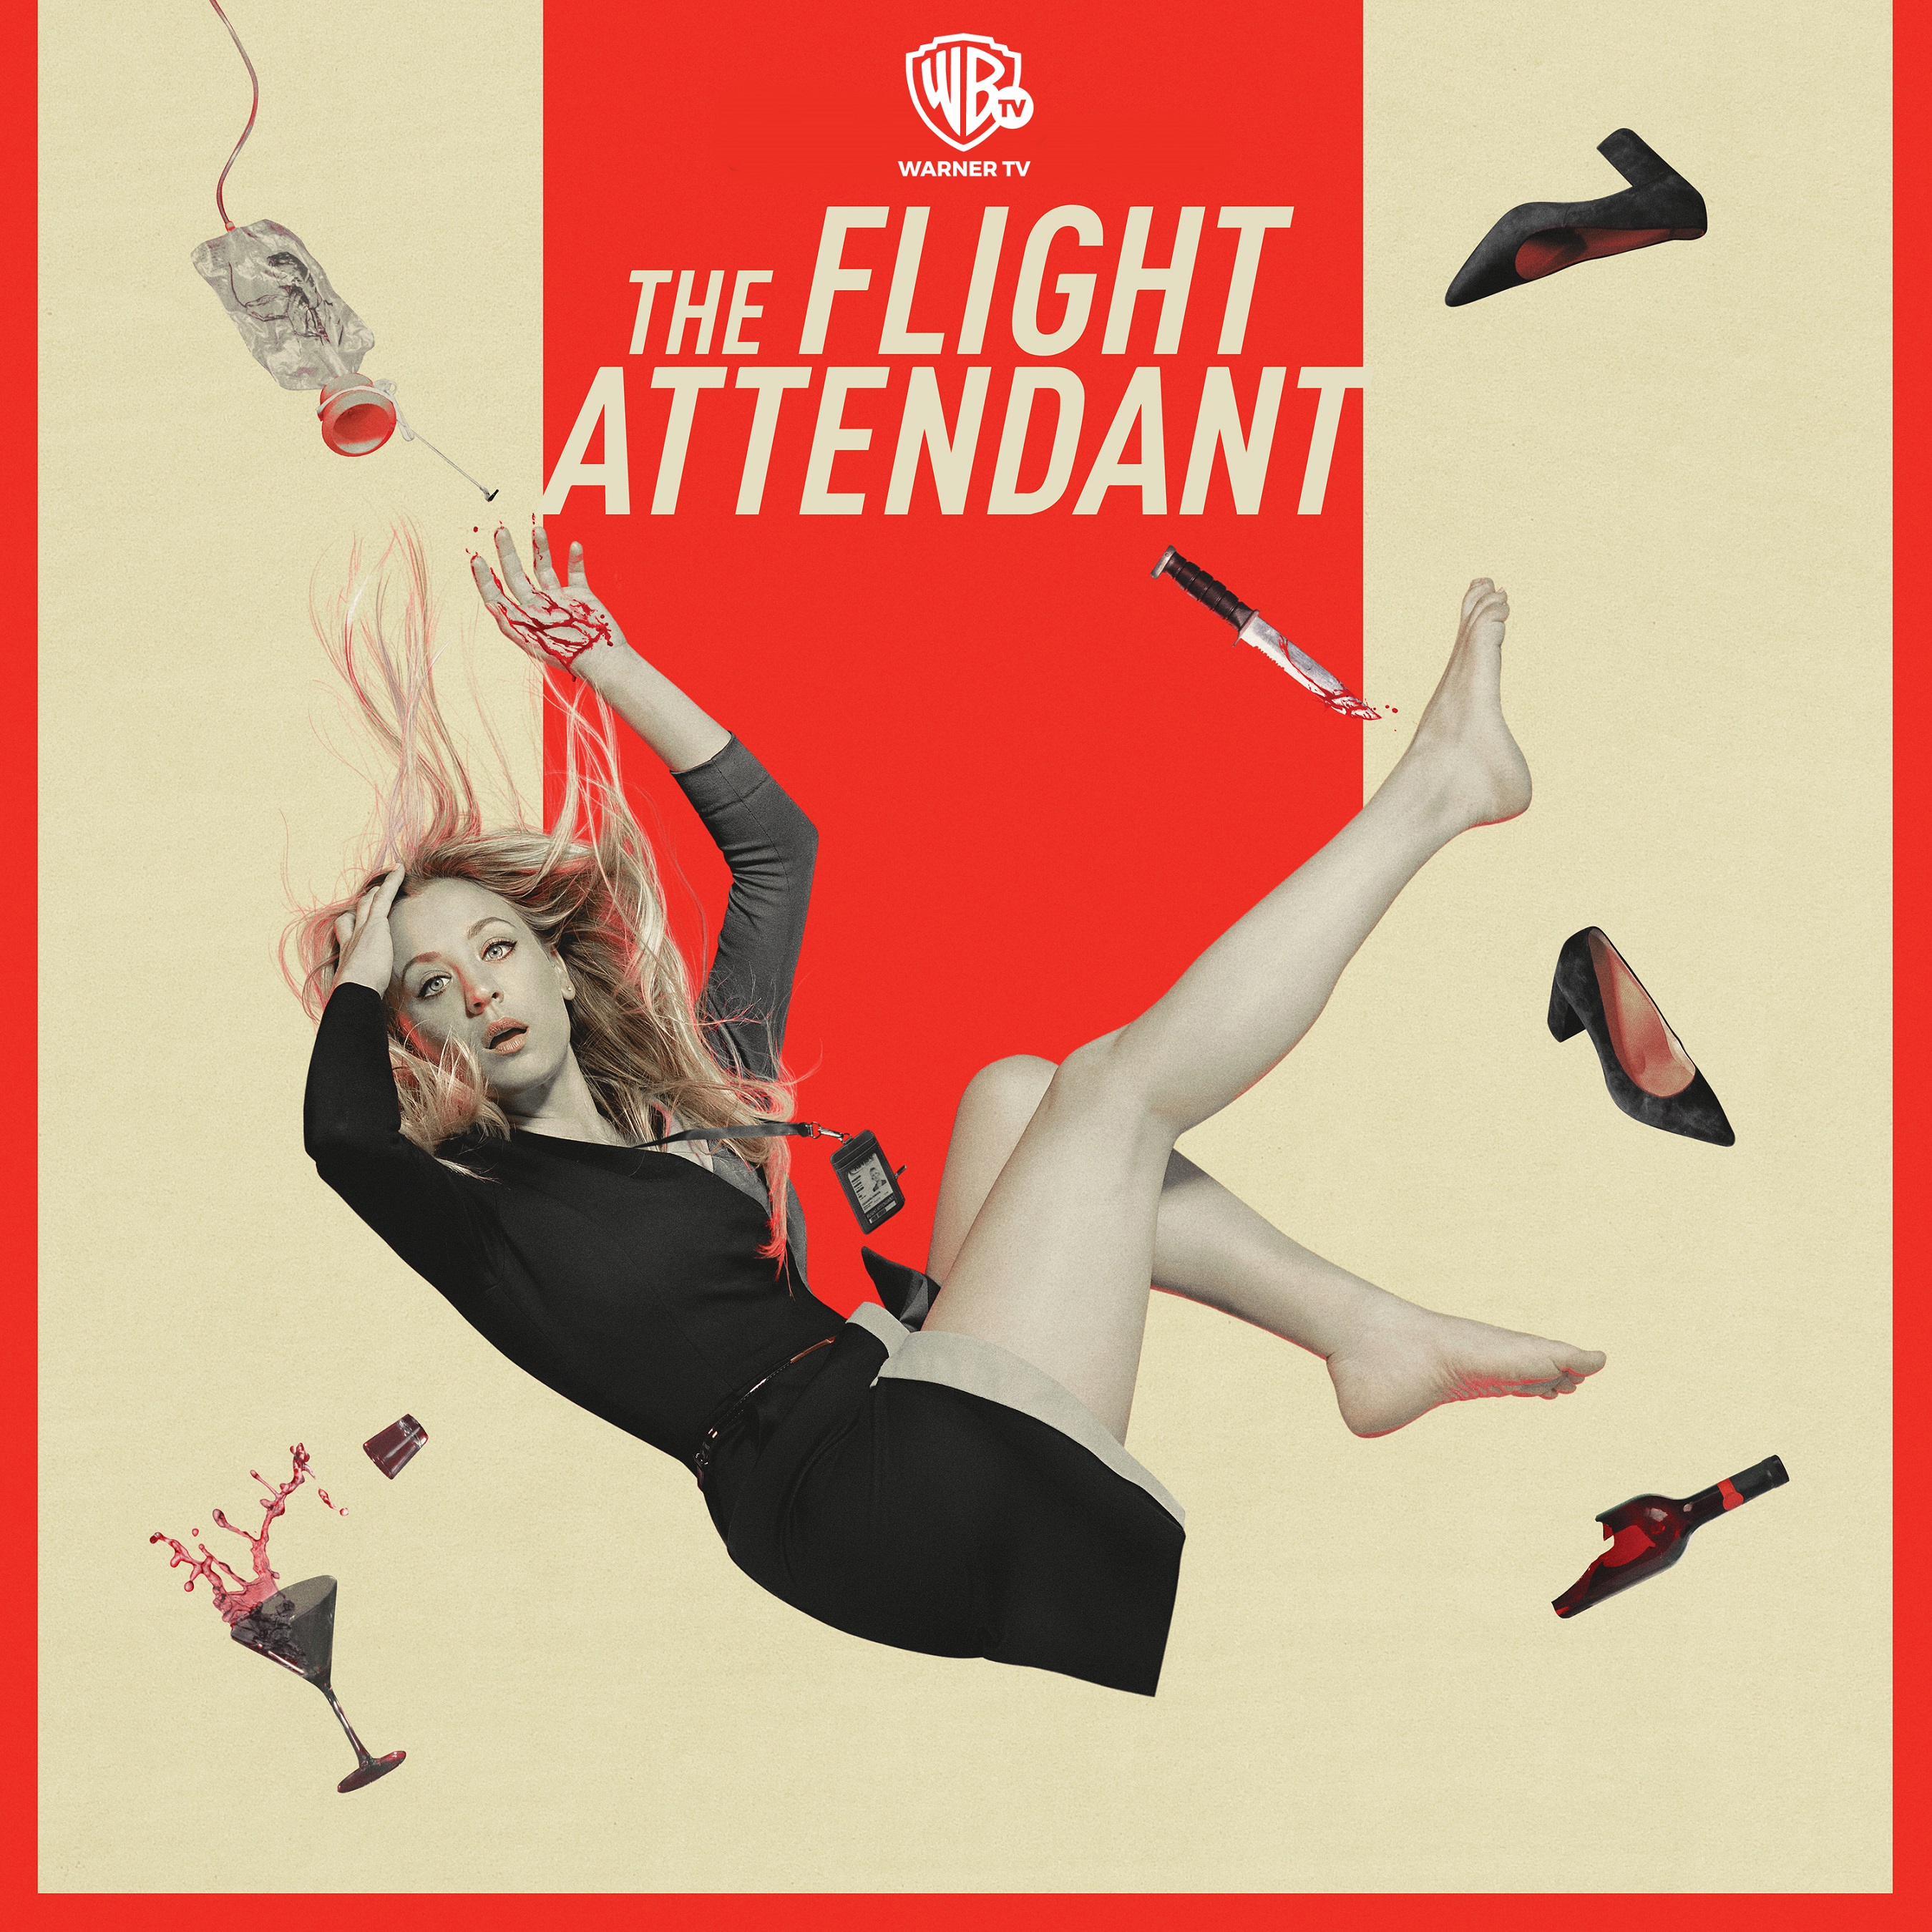 La série THE FLIGHT ATTENDANT arrive en 2021 sur Warner TV